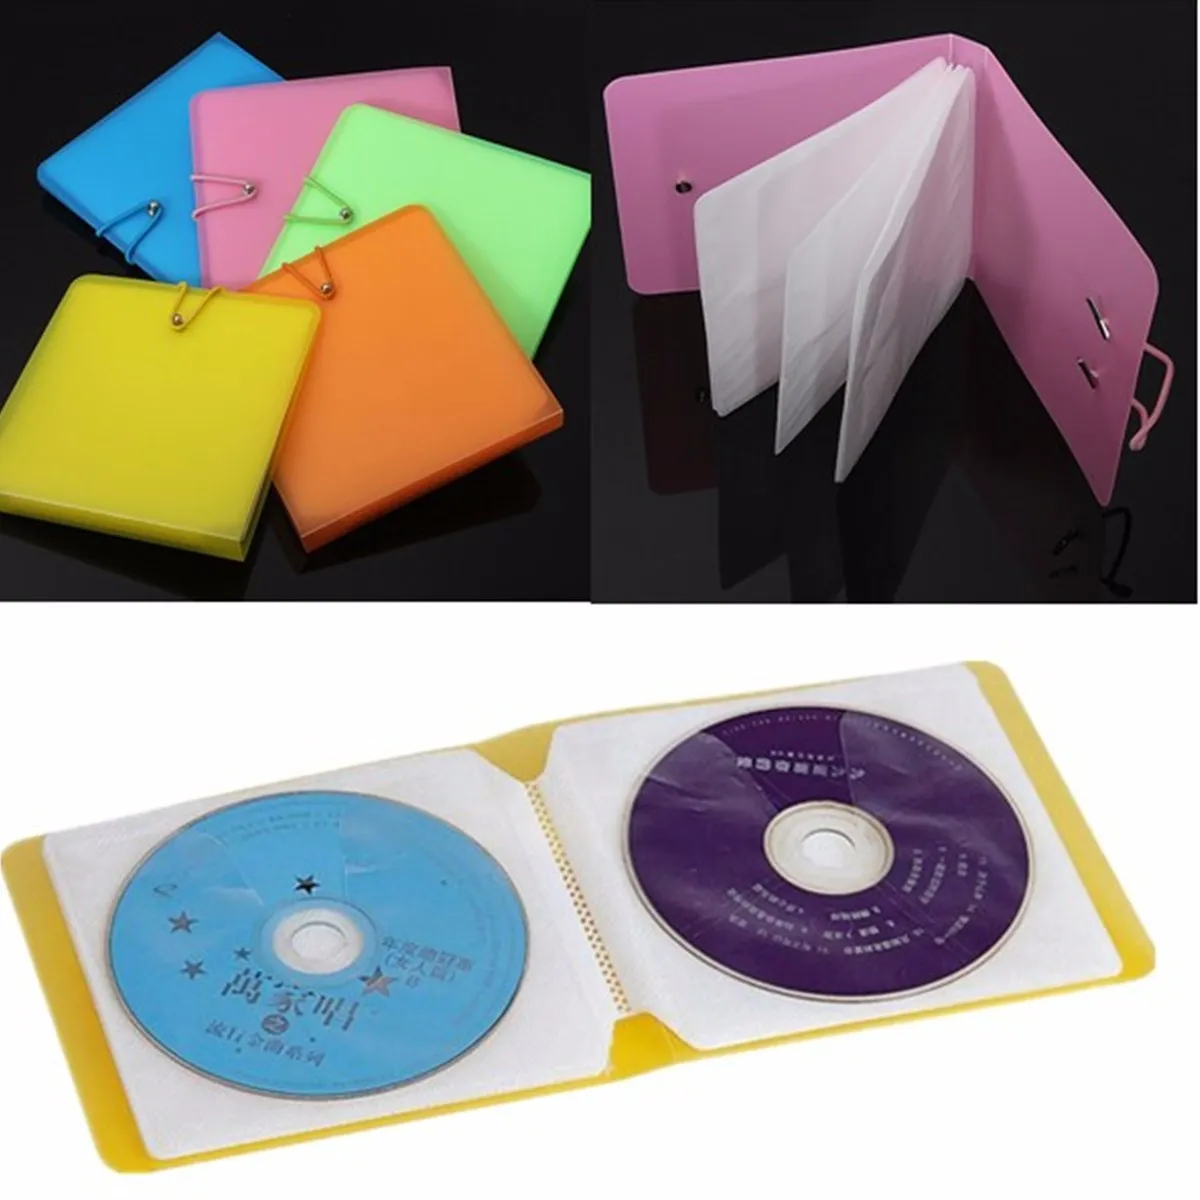 12 дисков Platics альбом коробка для CD VCD DVD портативный кошелек держатель для хранения сумка жесткий чехол коробки держатель Органайзер чехол для переноски